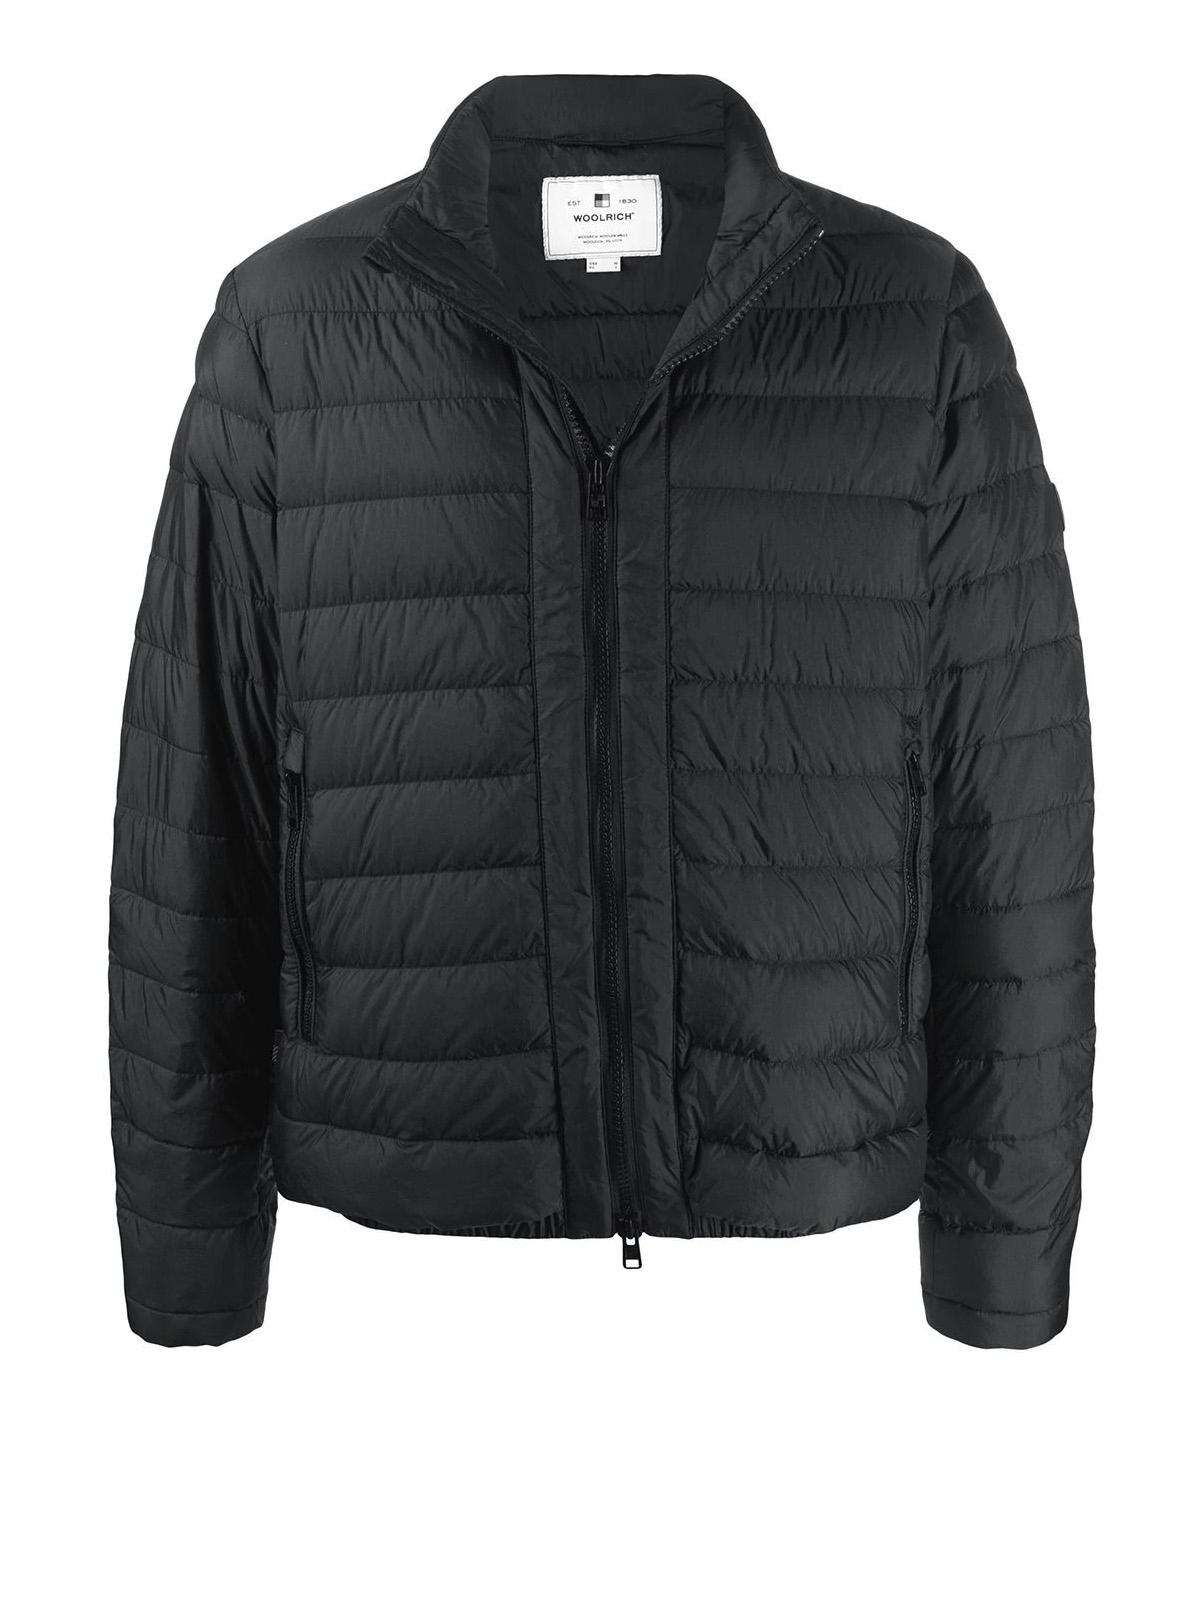 Woolrich Bering Black Puffer Jacket for Men - Lyst